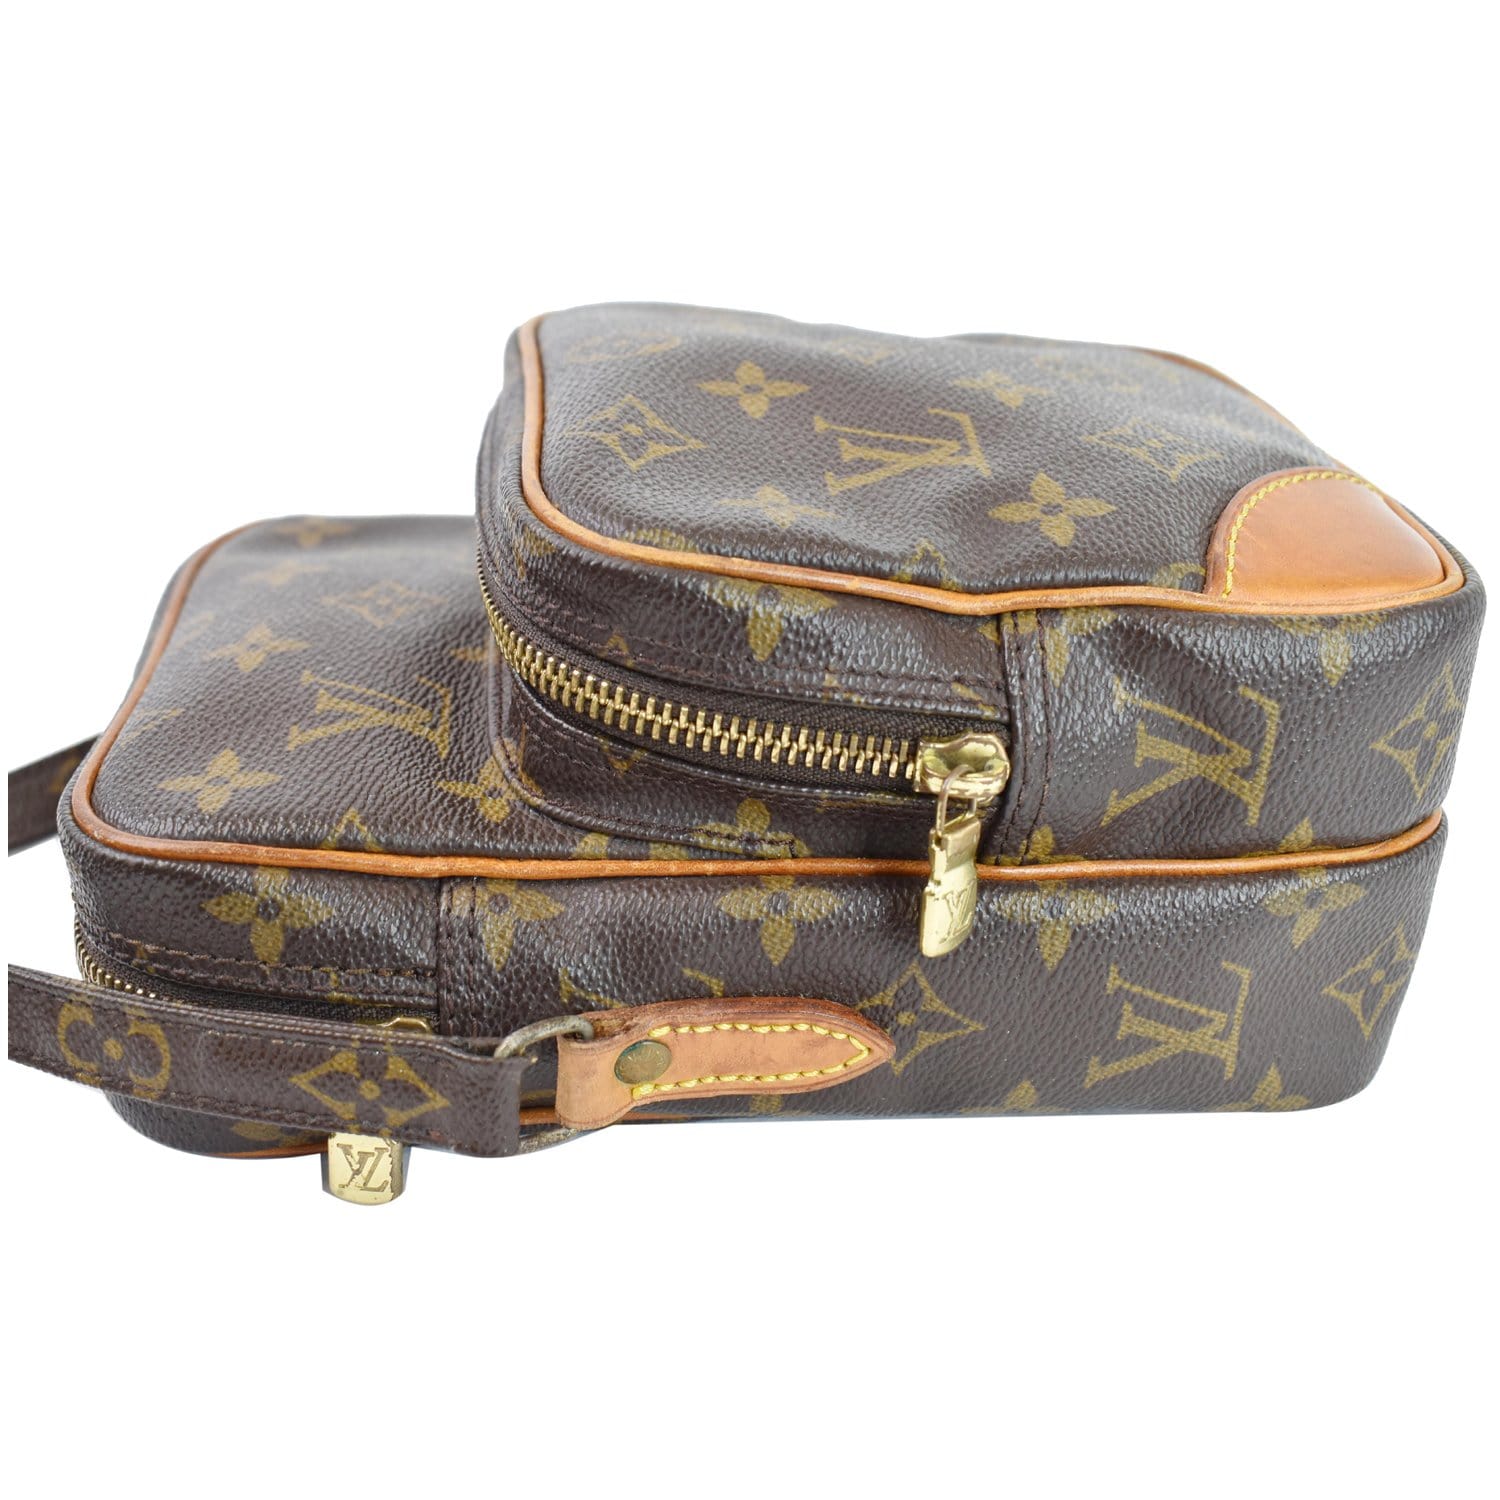 Dallas Designer Handbags - Louis Vuitton Under $1000 